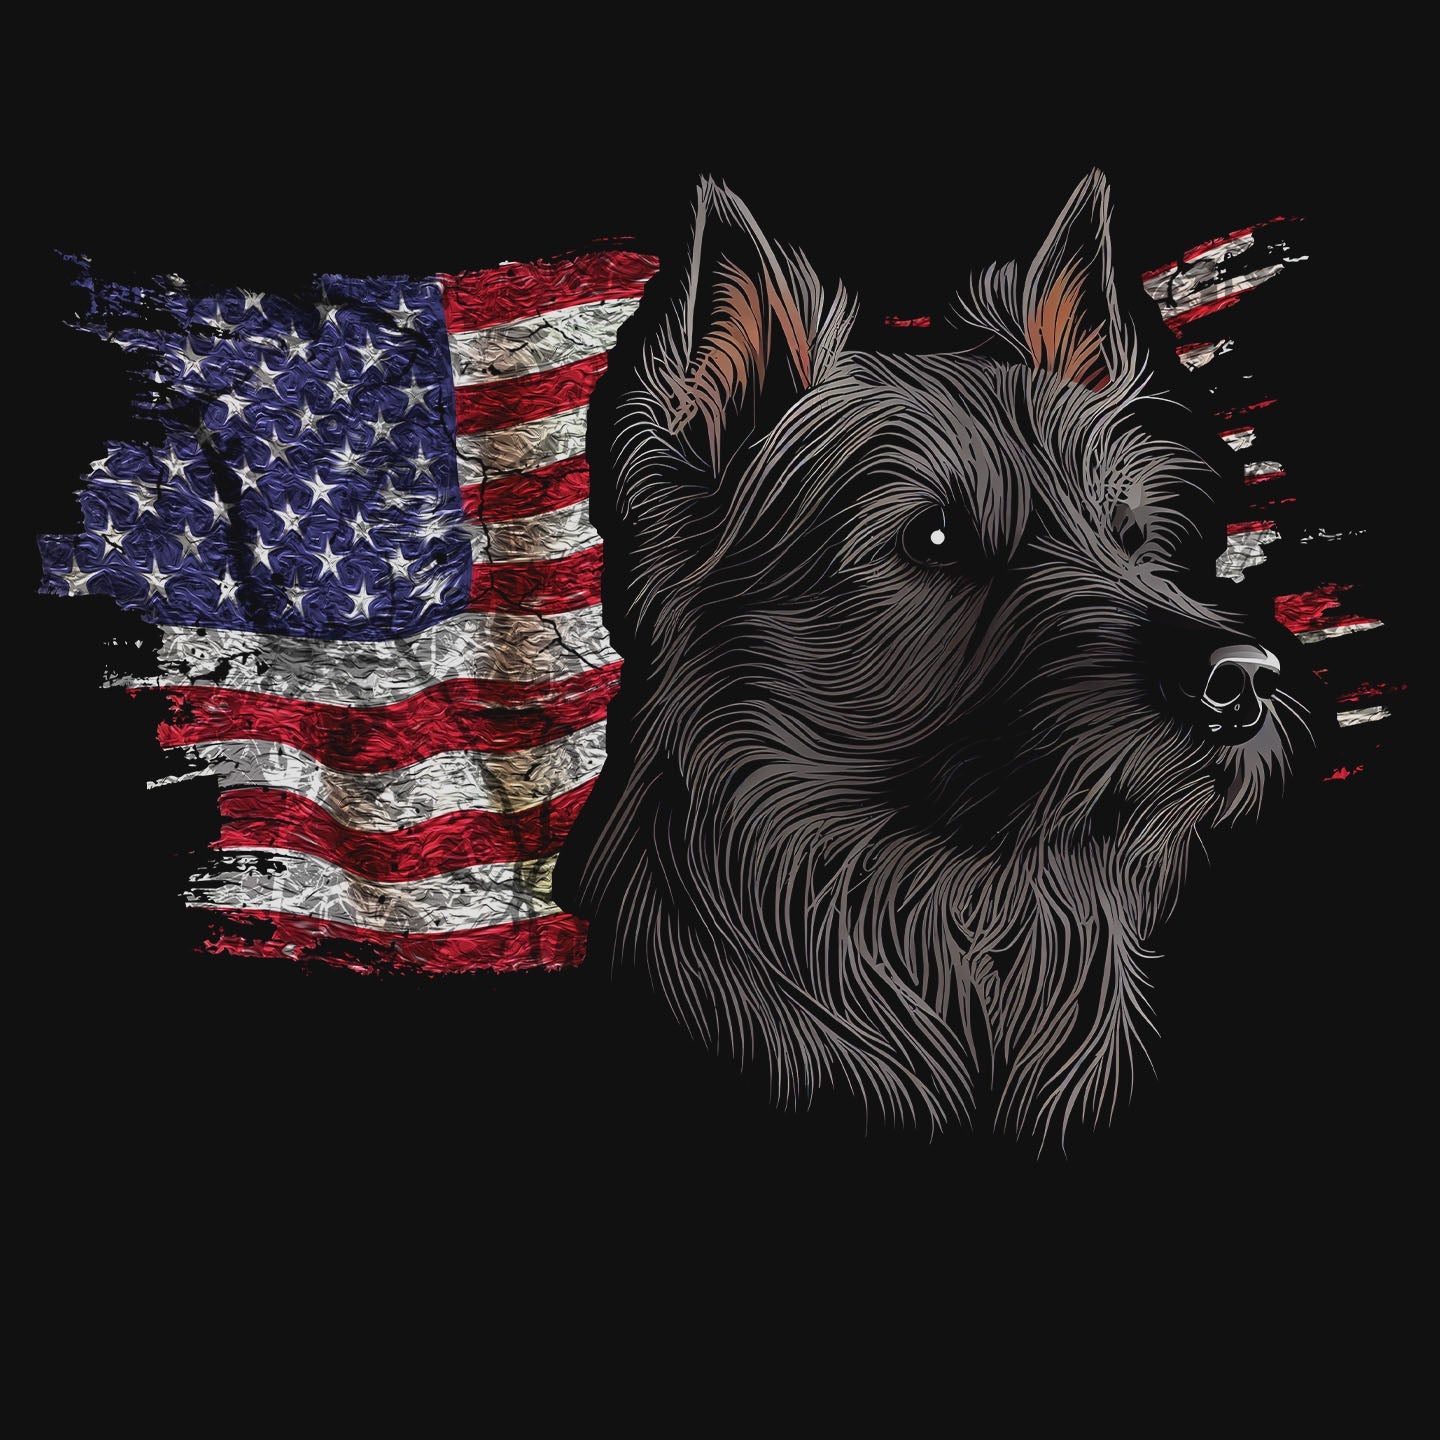 Patriotic Australian Terrier American Flag - Women's V-Neck T-Shirt